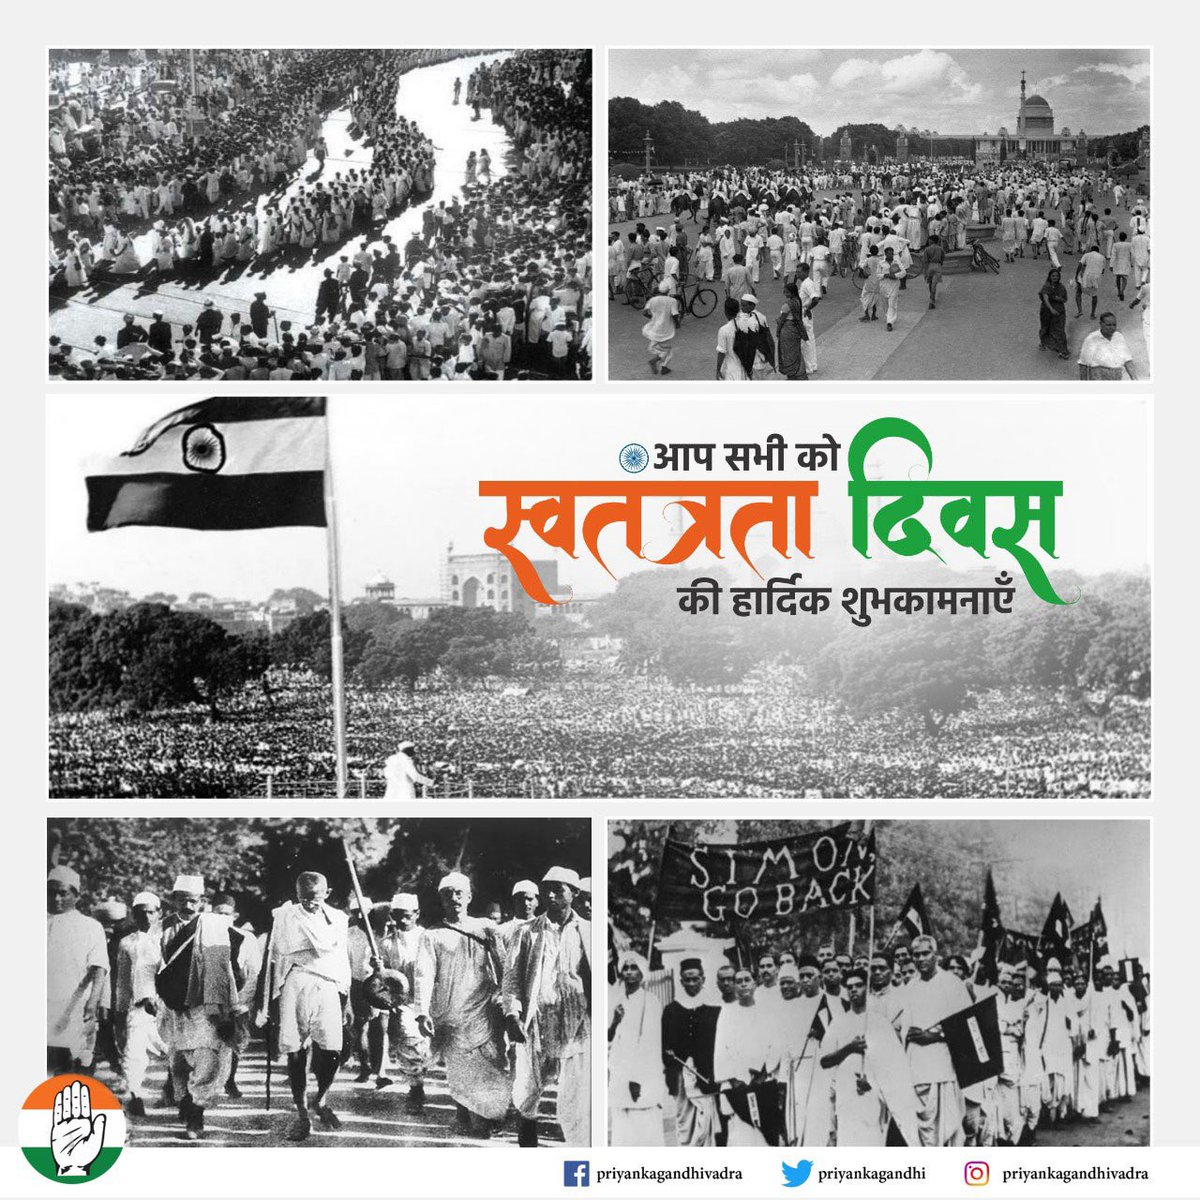 स्वतंत्रता दिवस की शुभकामनाएँ

75वें #IndependenceDay पर उप्र कांग्रेस 'जयभारत जनसंपर्क अभियान' के तहत उप्र के गांव-गांव में स्वतंत्रता सेनानियों, उनके परिवारों, किसानों को सम्मानित करेगी और प्रत्येक प्रदेशवासी को देश को मज़बूत बनाने में योगदान देने के लिए धन्यवाद देगी।

#जय_हिंद